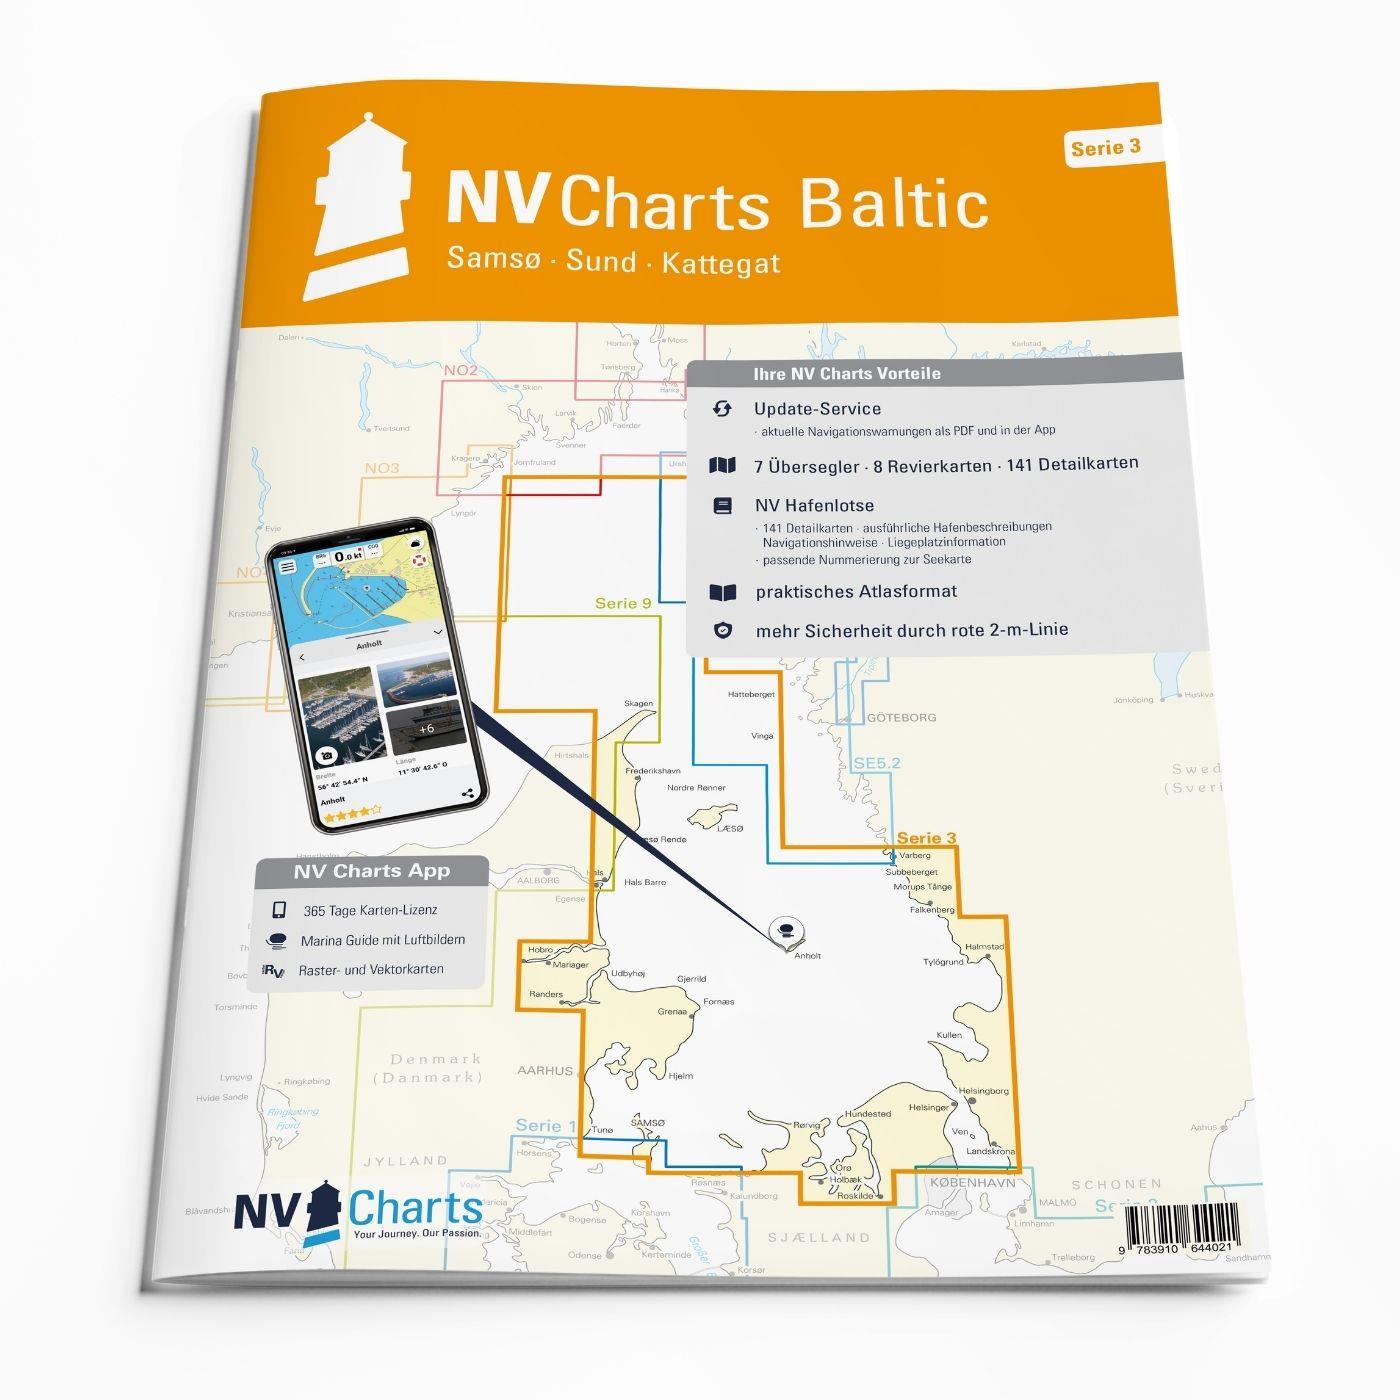 Subscription - NV Charts Baltic Region 3 Samsø-Sund-Kattegat